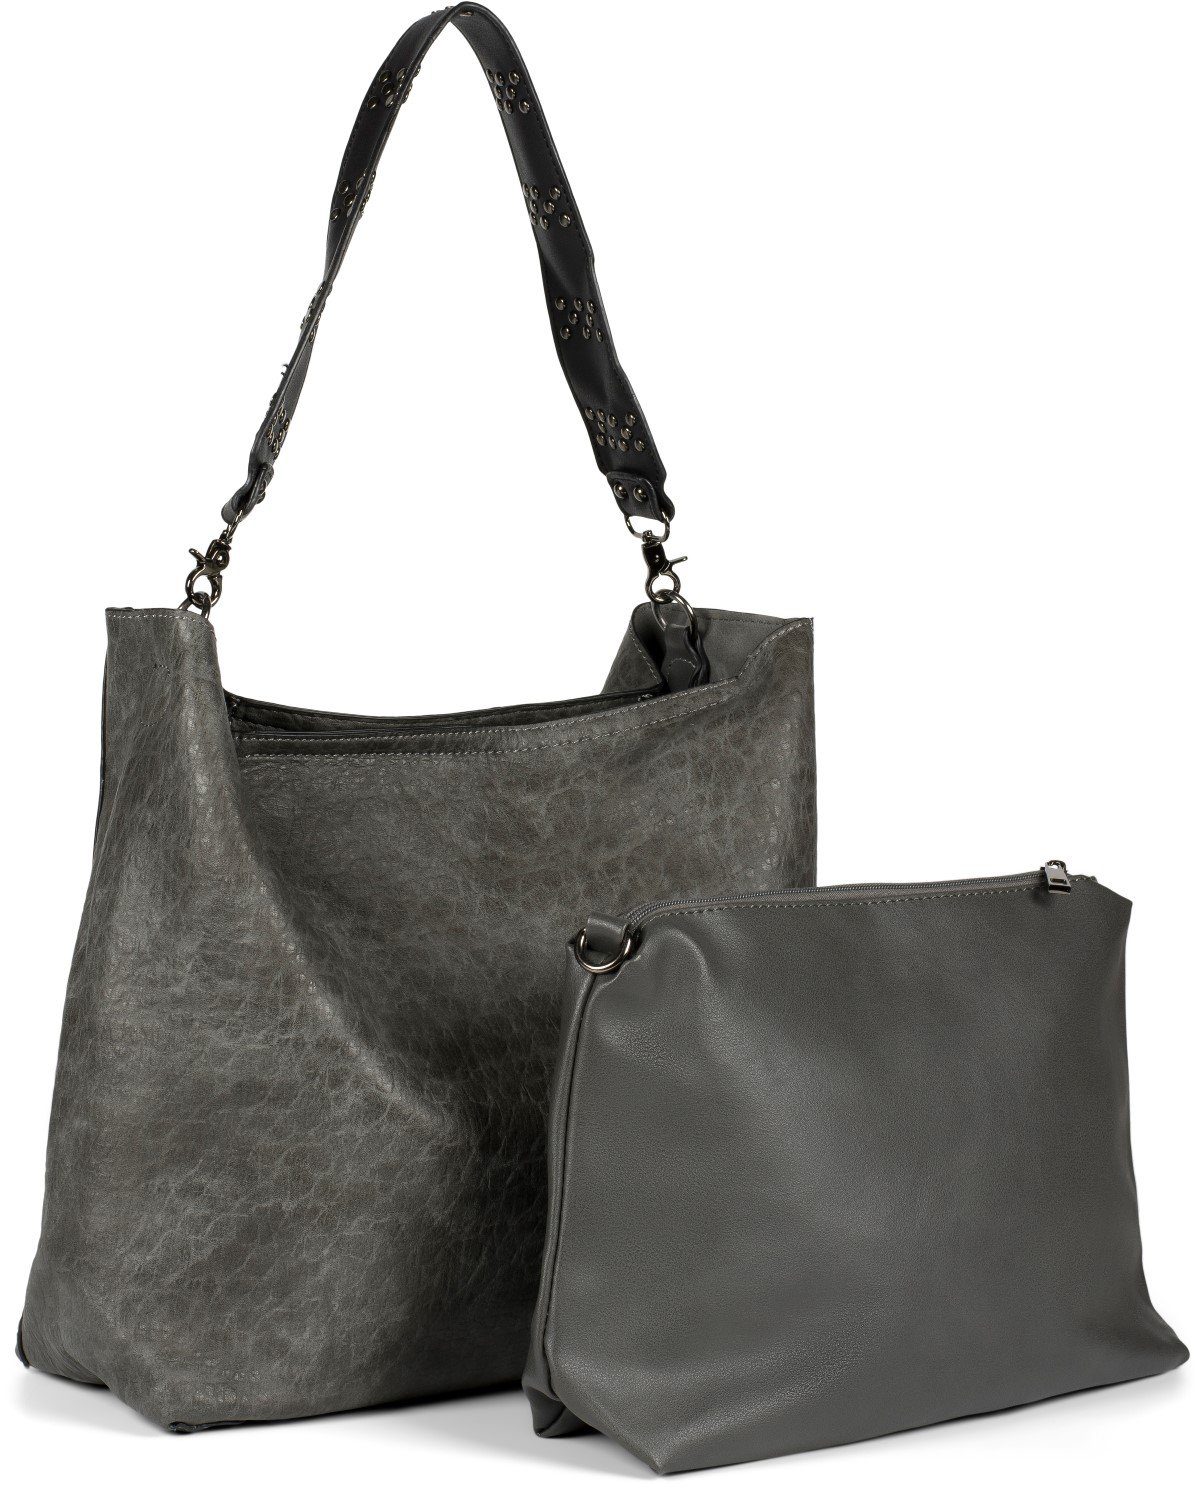 Damen Handtaschen styleBREAKER Hobo, 2 in 1 Schultertasche mit Nietengurt und Innentasche